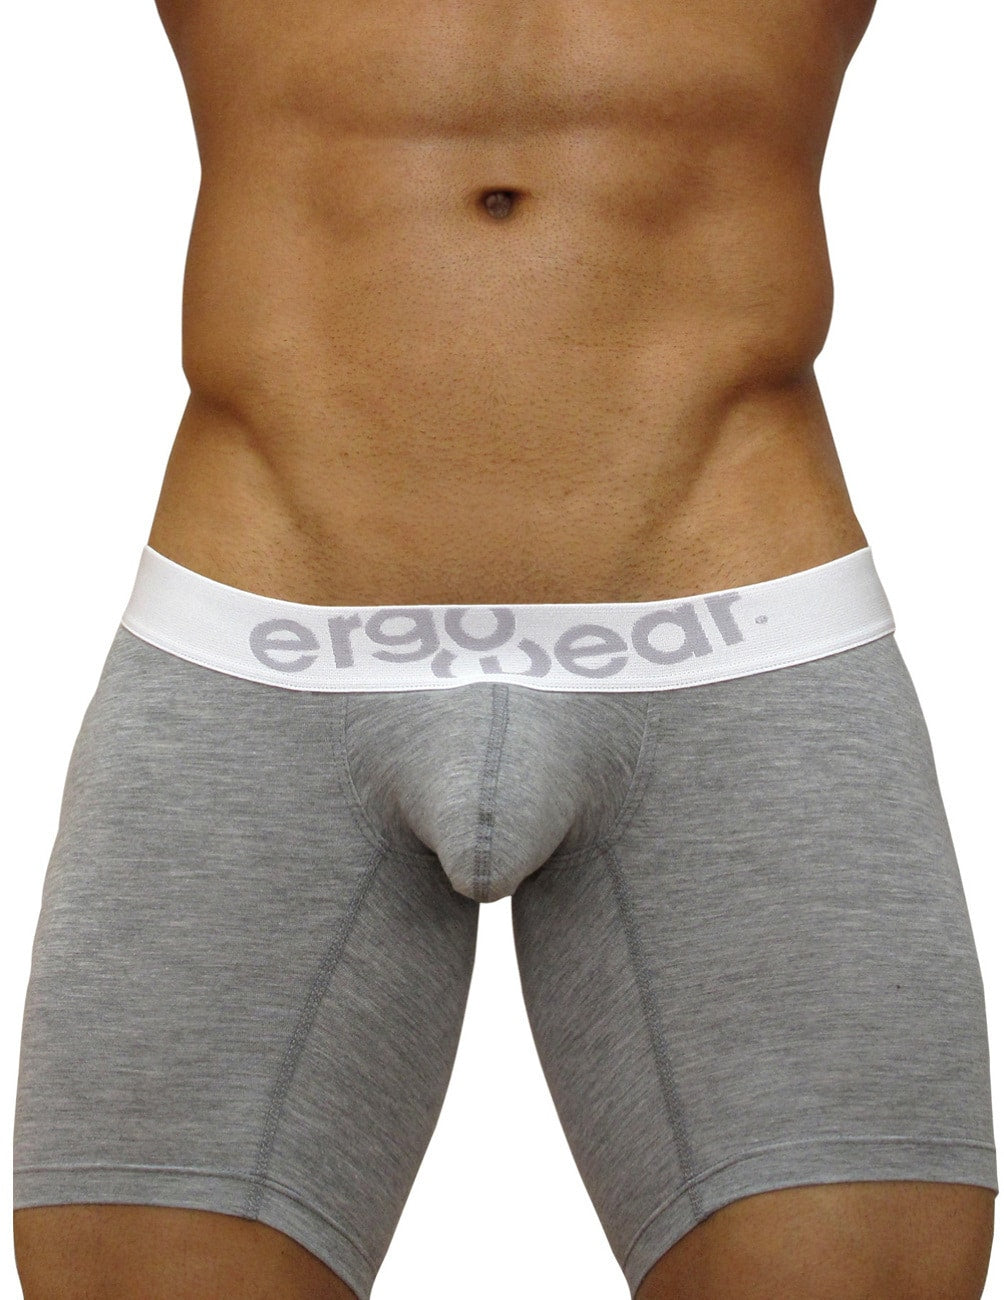 ErgoWear Underwear MAX Premium Midcut Boxer Brief